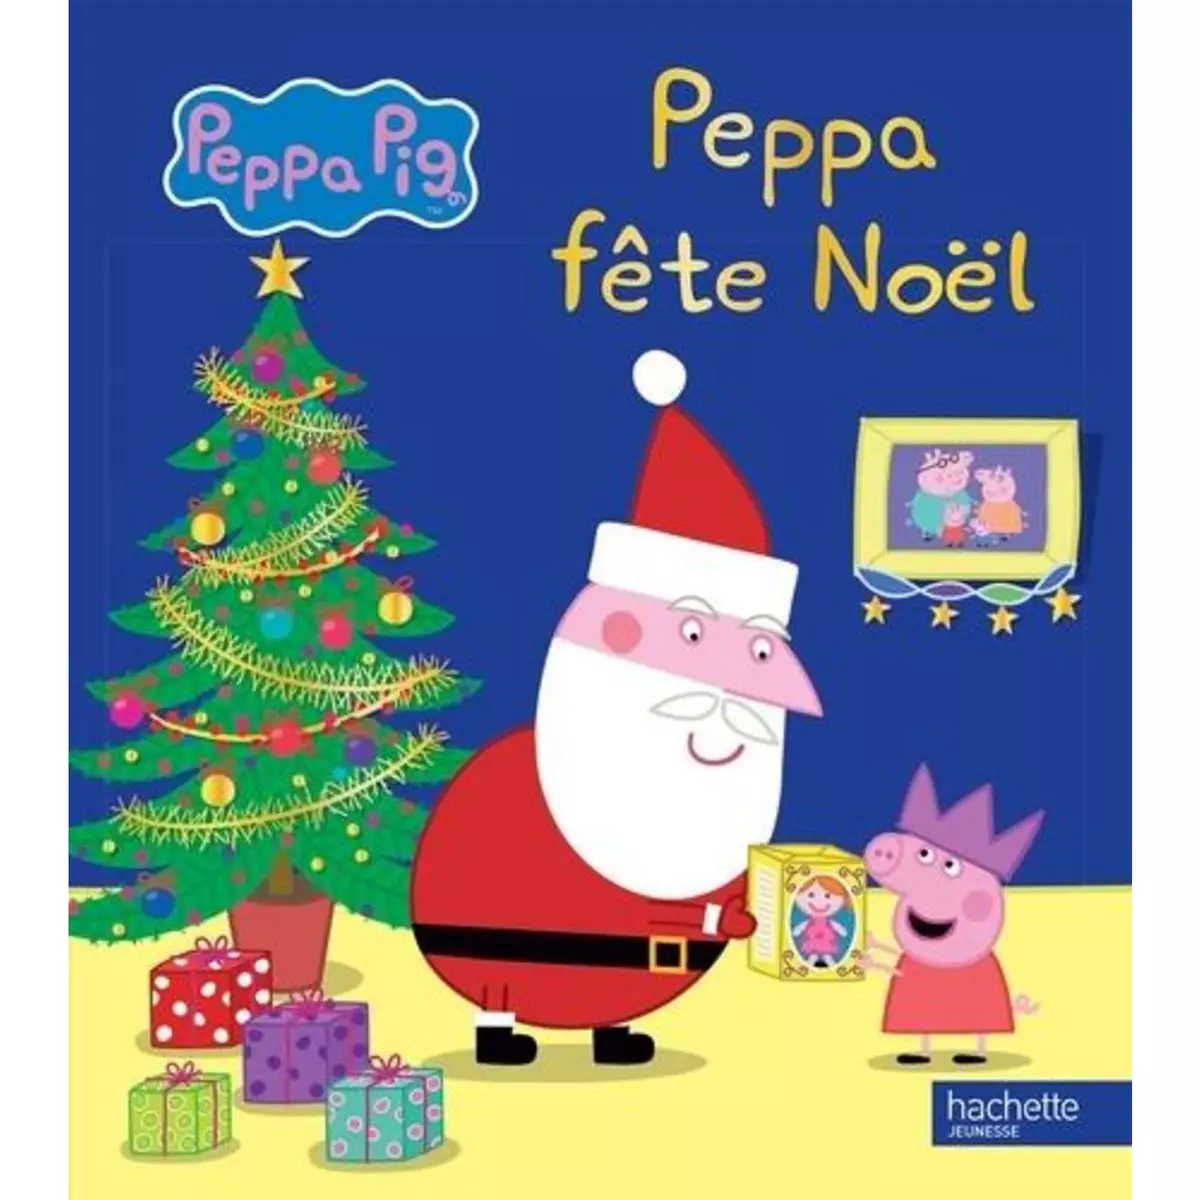  PEPPA FETE NOEL, Hachette Jeunesse